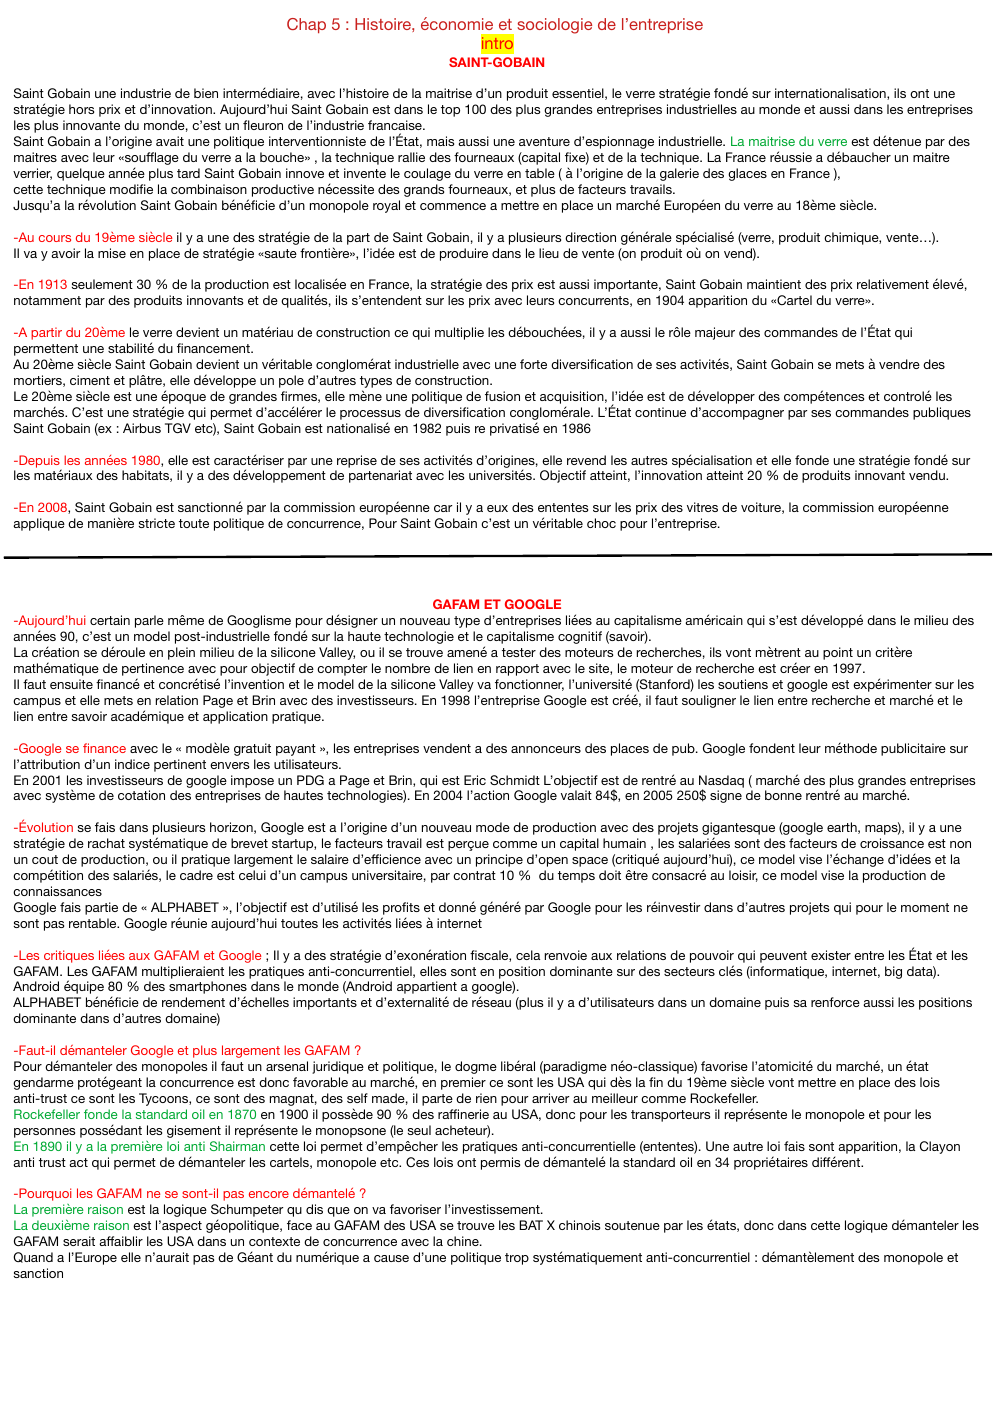 Prévisualisation du document Chap 5 : Histoire, économie et sociologie de l’entreprise intro SAINT-GOBAIN